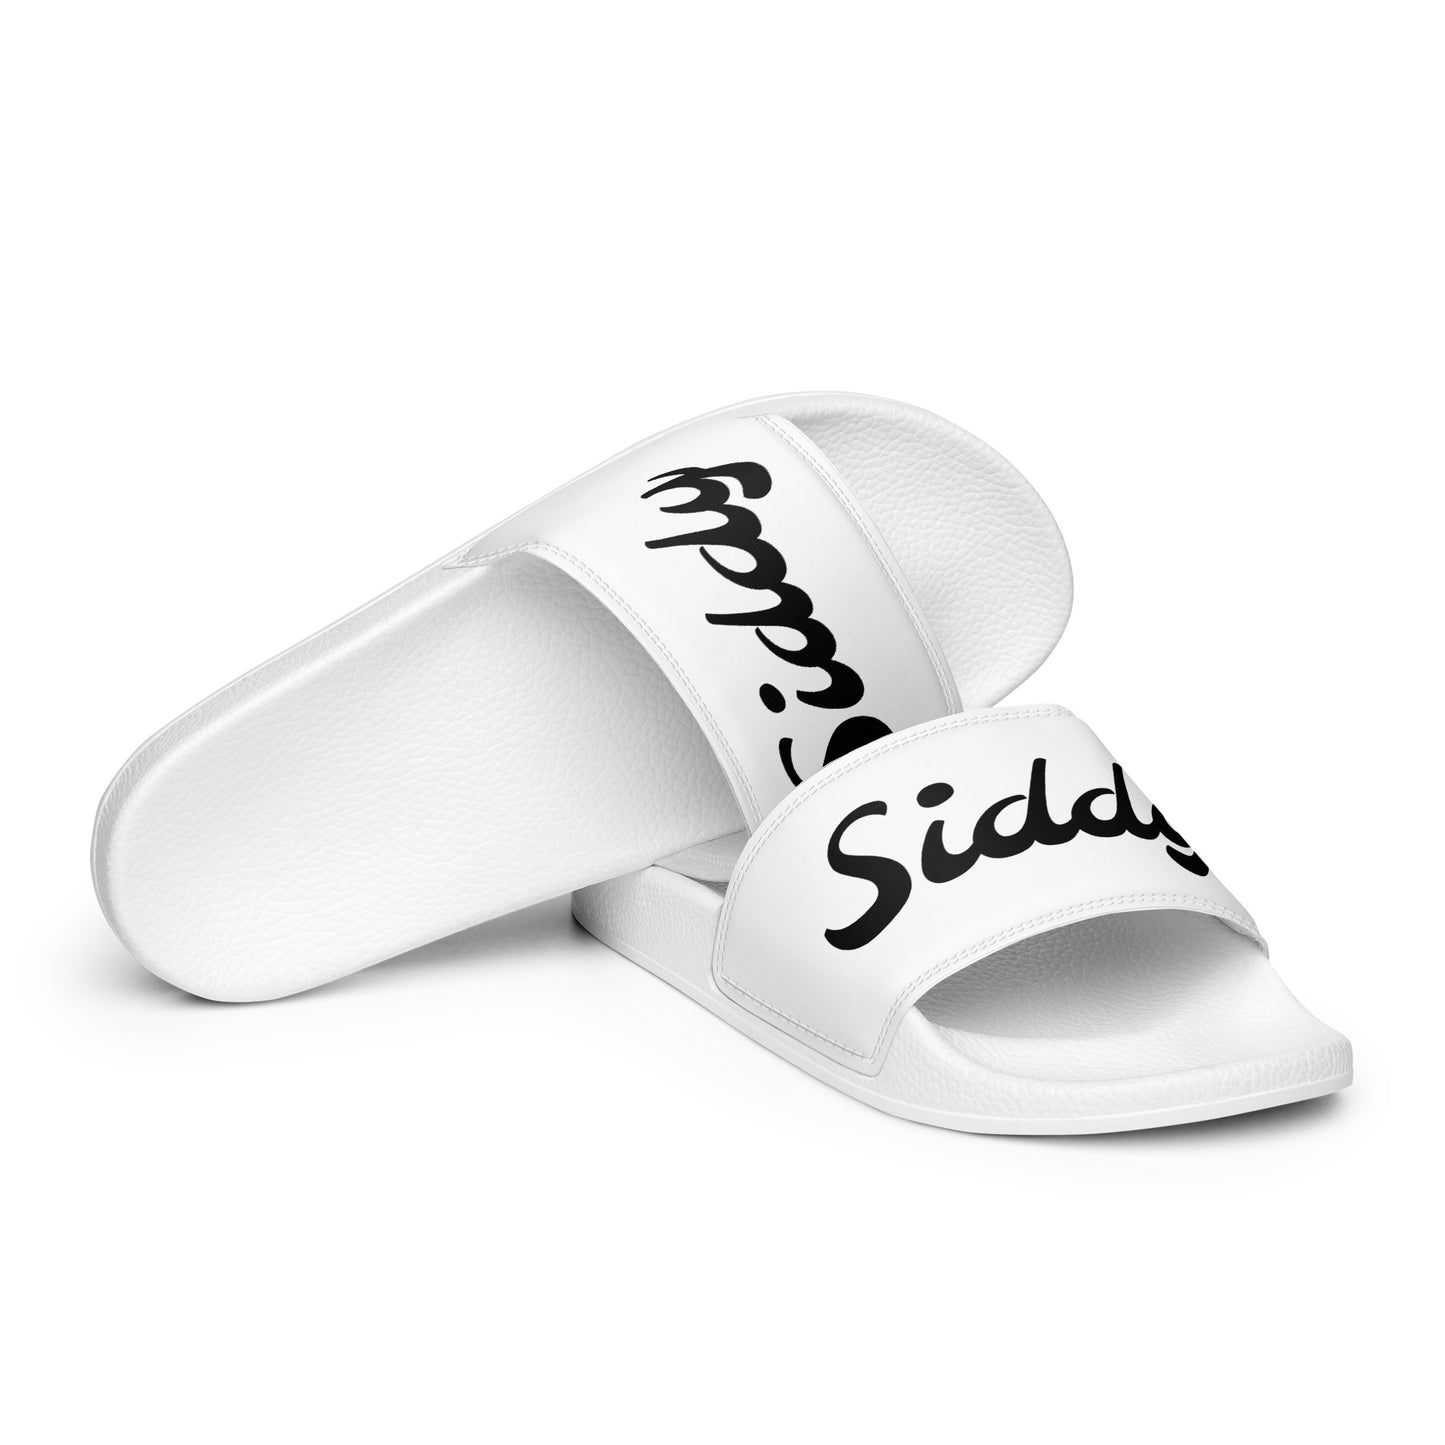 Siddy Men’s slides